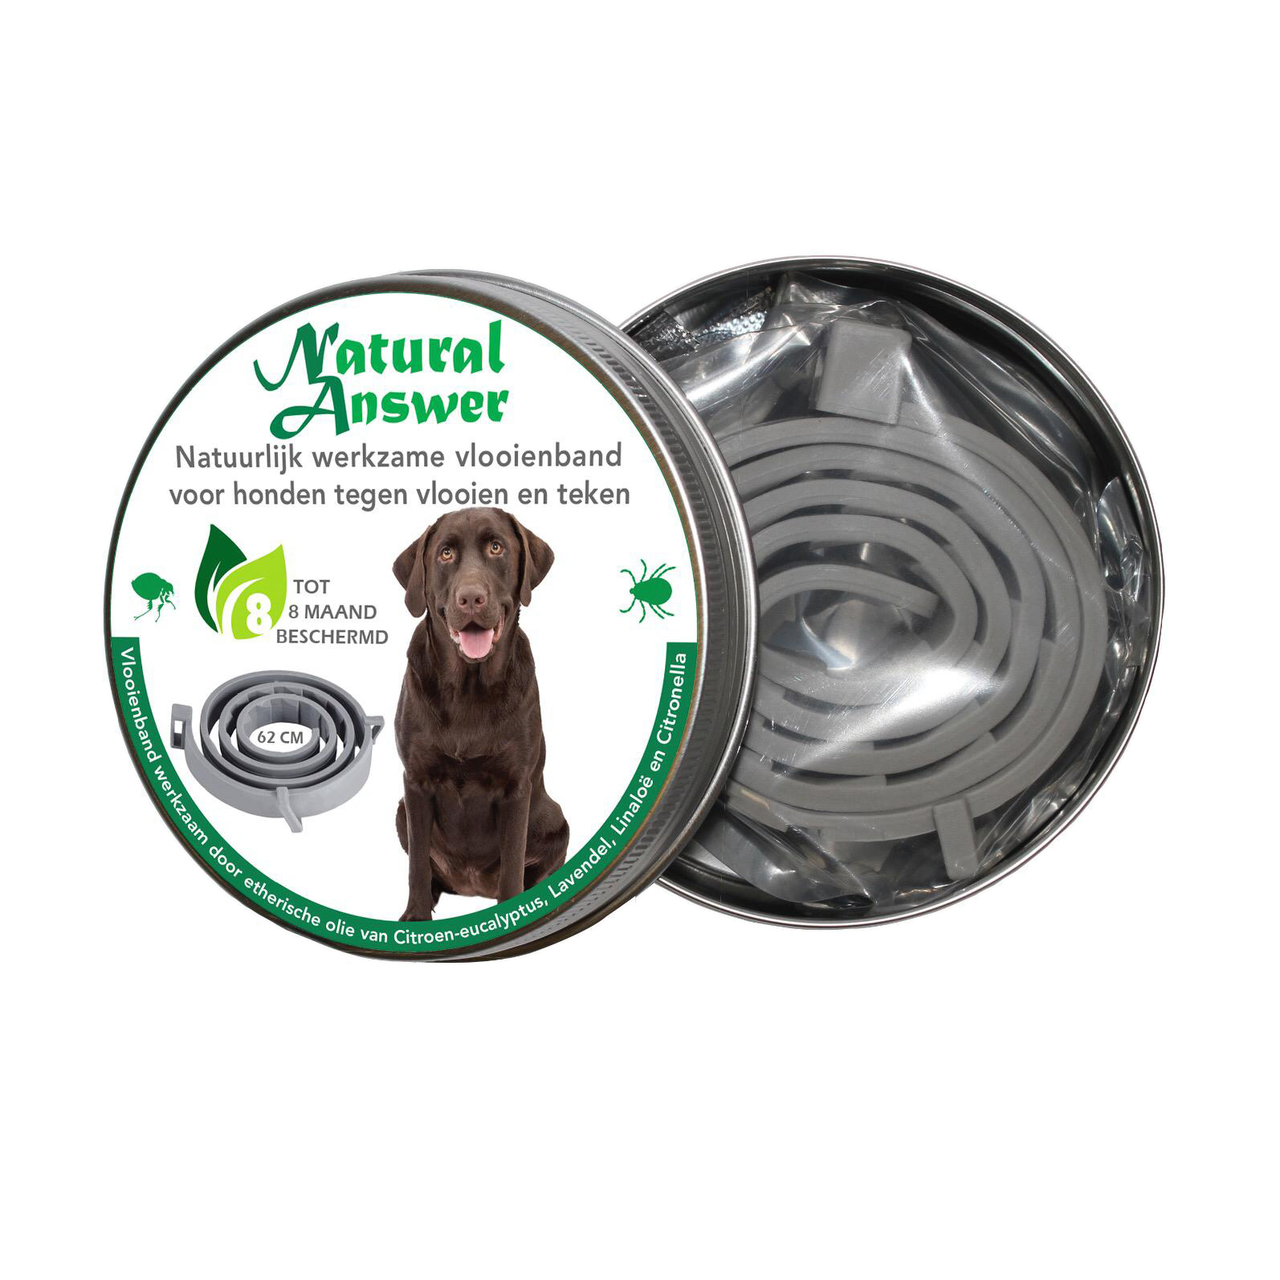 Eigenlijk reservoir nek Natural Answer anti vlooien- en tekenband hond - Natuurlijk voor uw hond